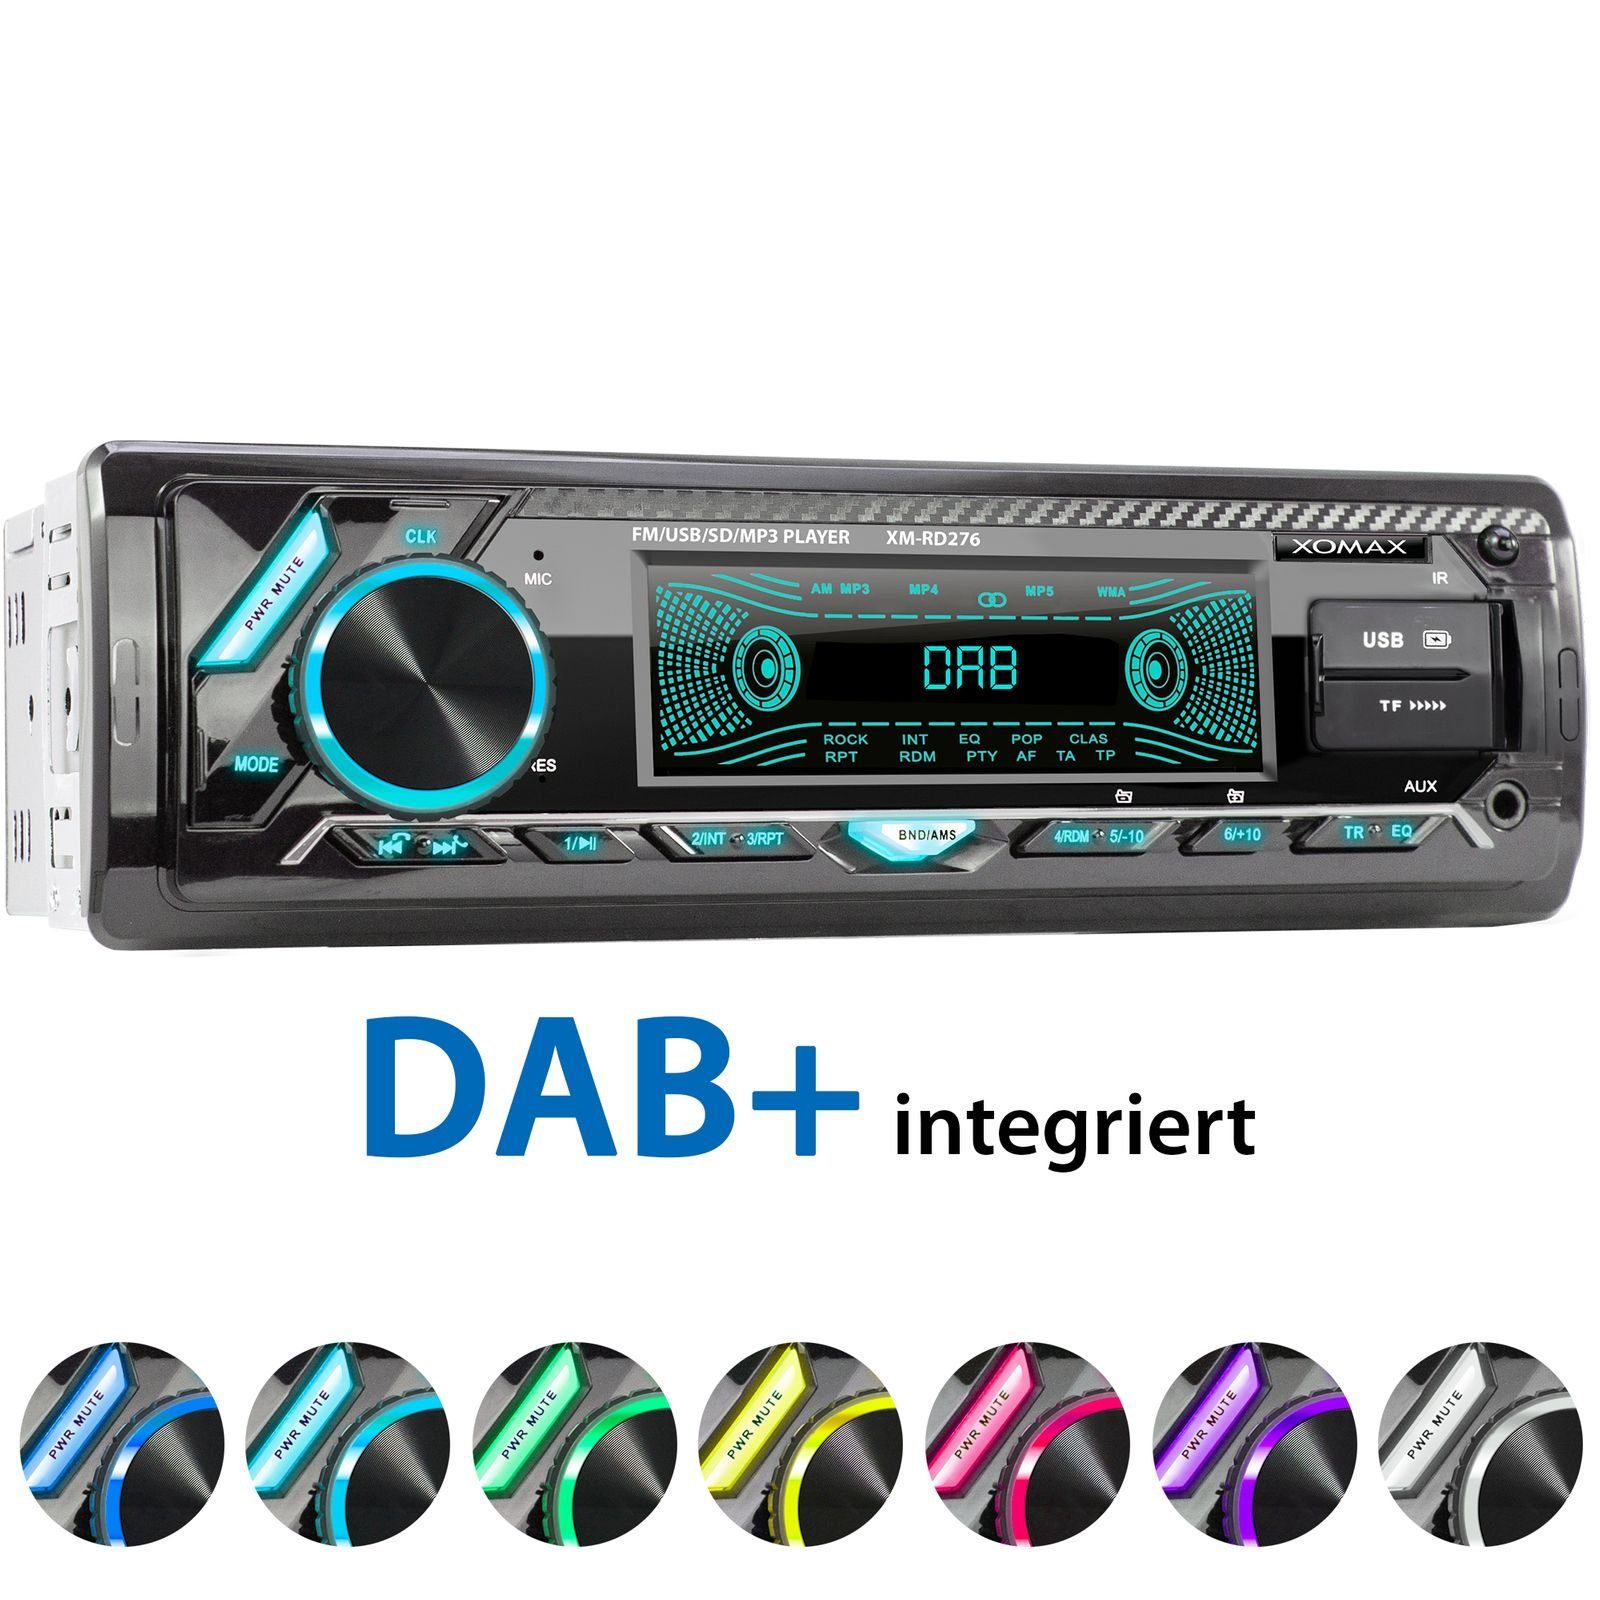 XOMAX Autoradio (XOMAX XM-RD276: 1DIN, Autoradio mit DAB+, Bluetooth, USB,  AUX IN, ohne Laufwerk) online kaufen | OTTO